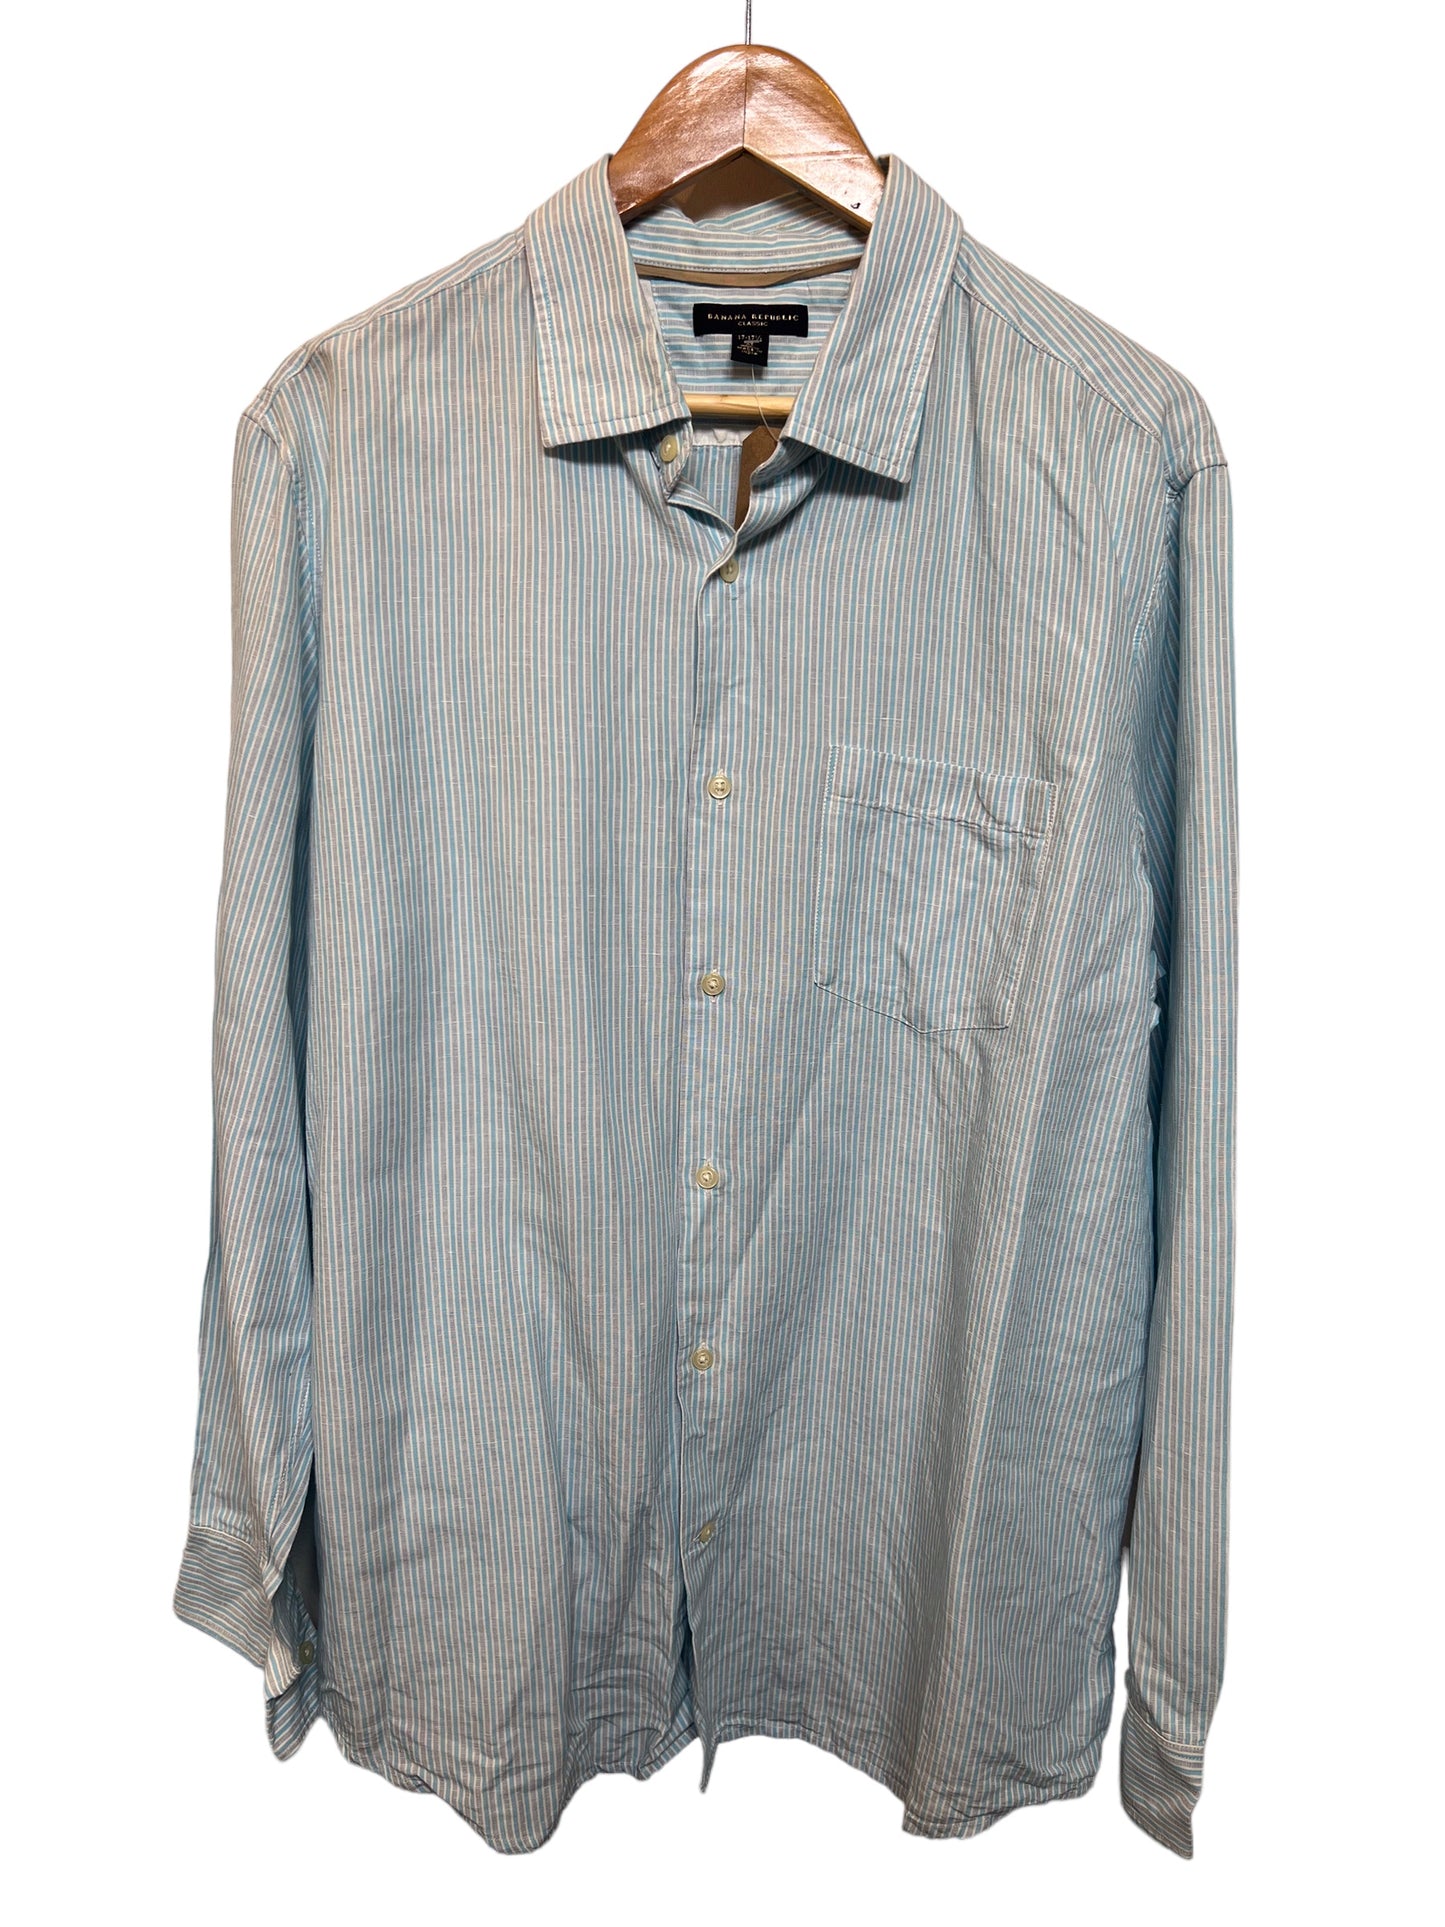 Men’s Blue White Striped Shirt (Size XXL)